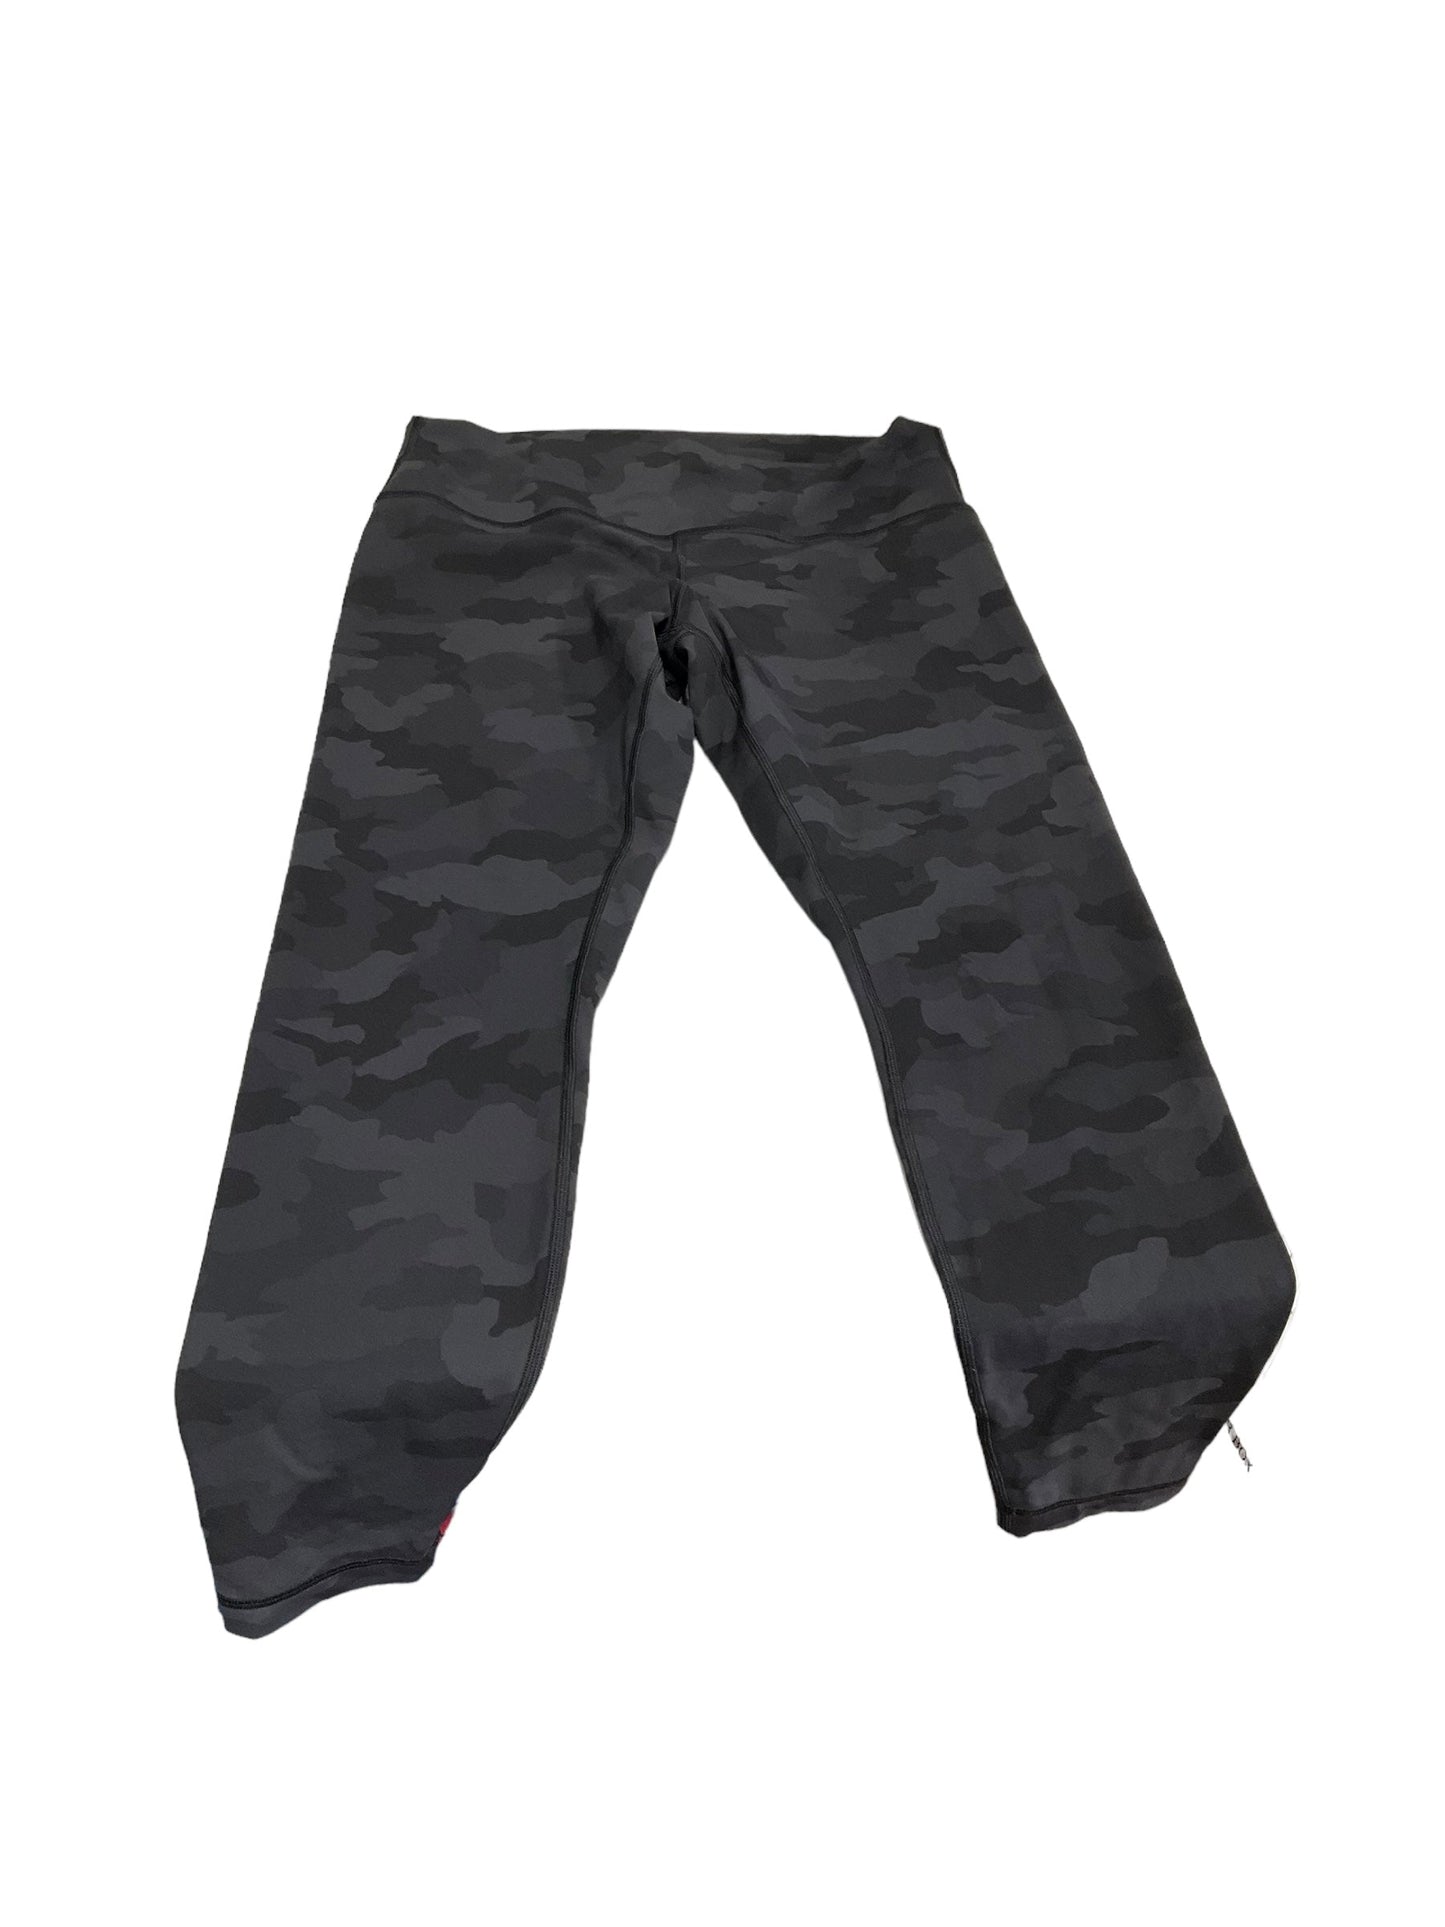 Black Athletic Pants Lululemon, Size 14